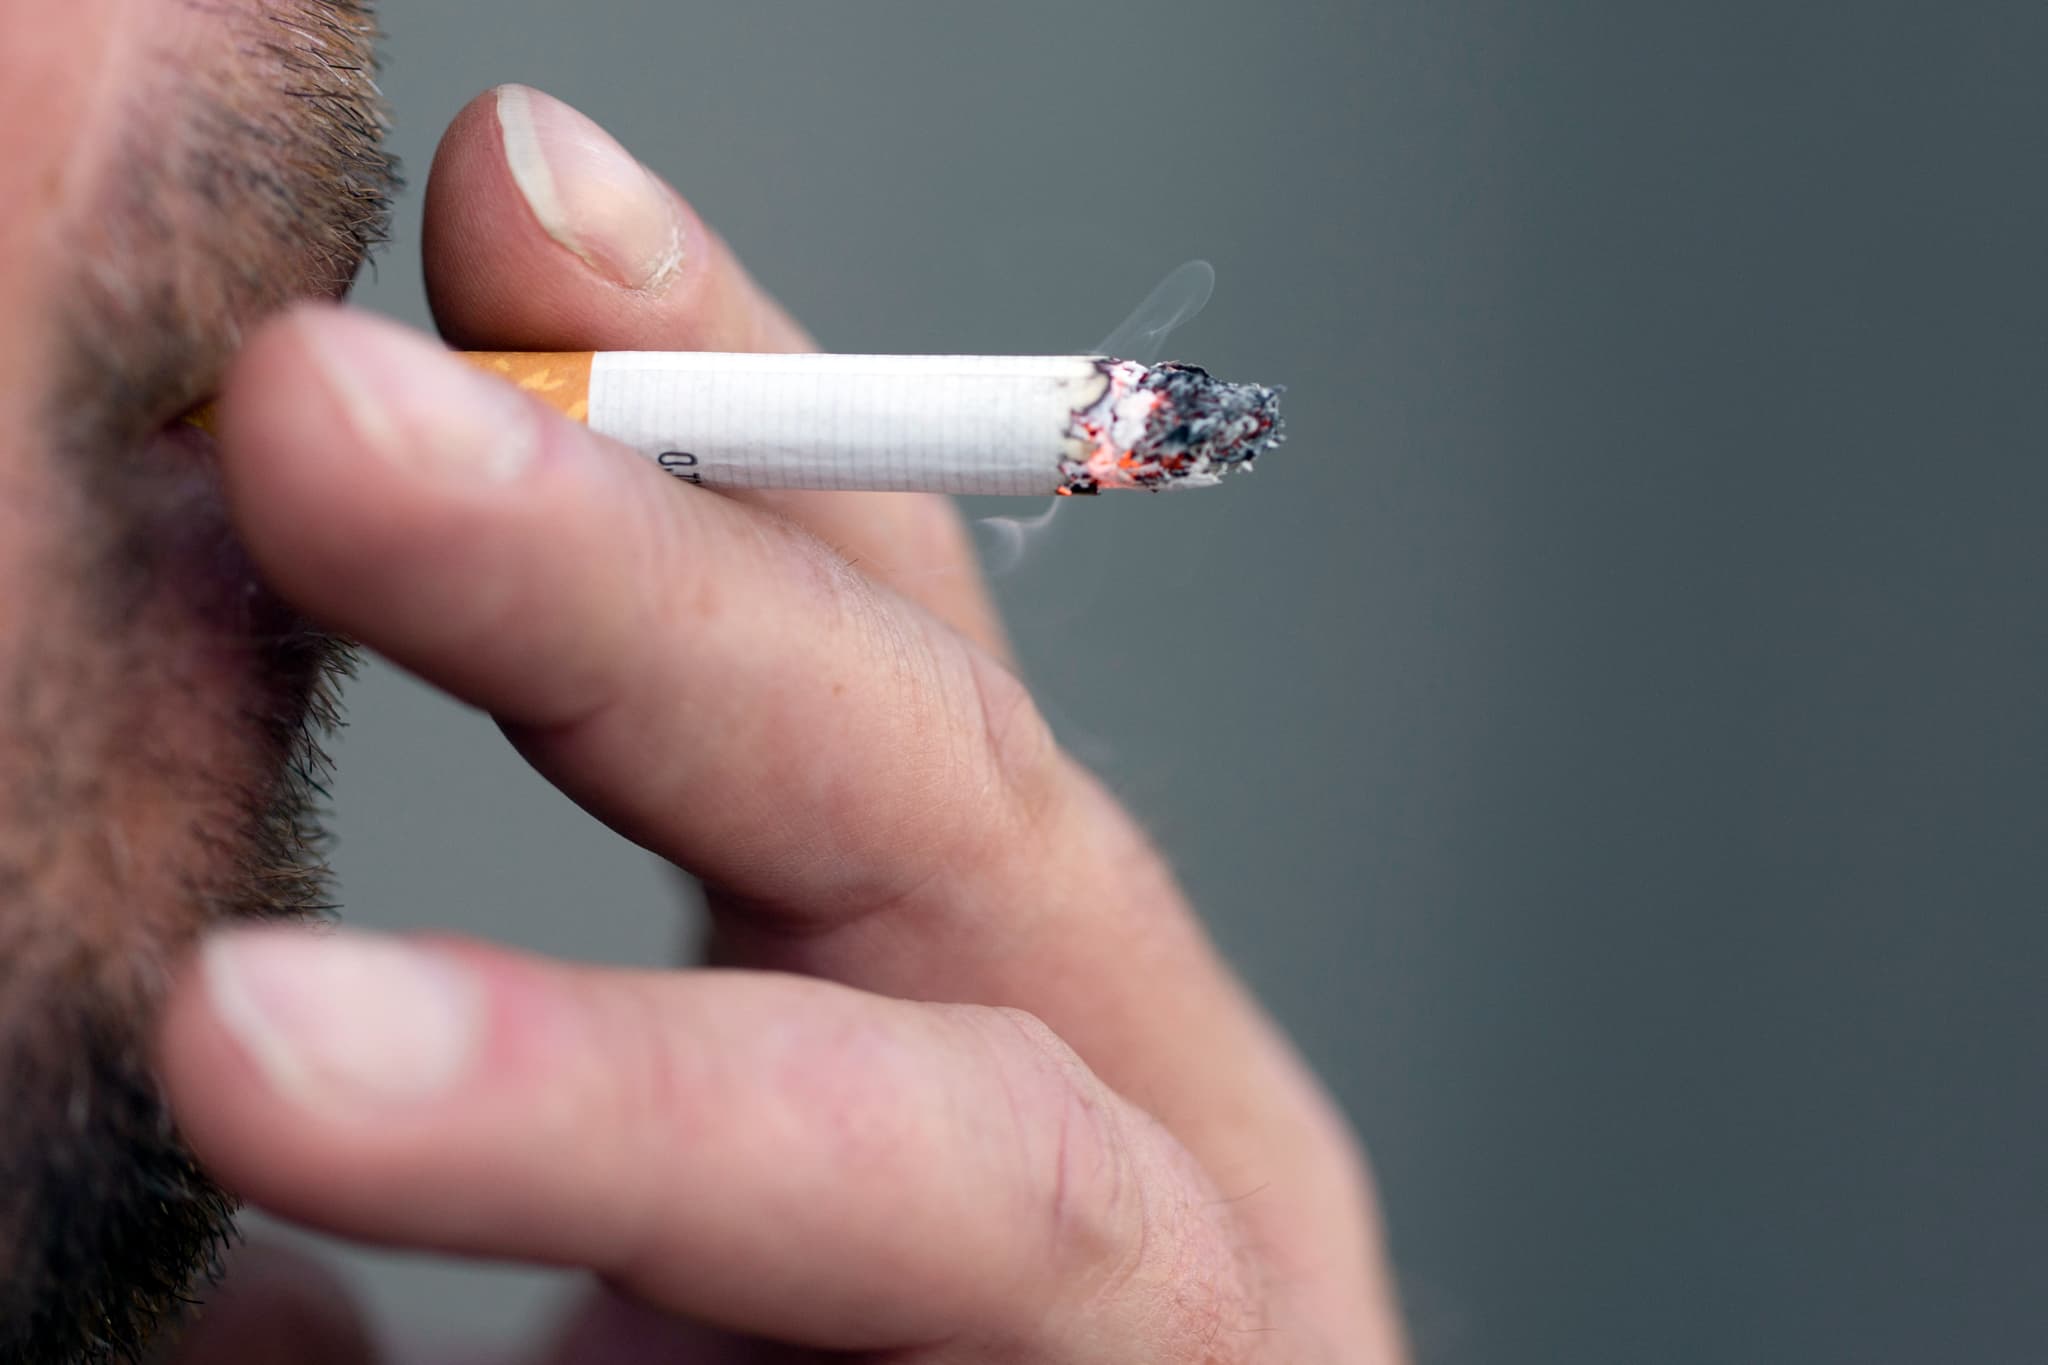 tabagisme: arrêter de fumer avant 40 ans permet de retrouver une espérance de vie quasi-normale